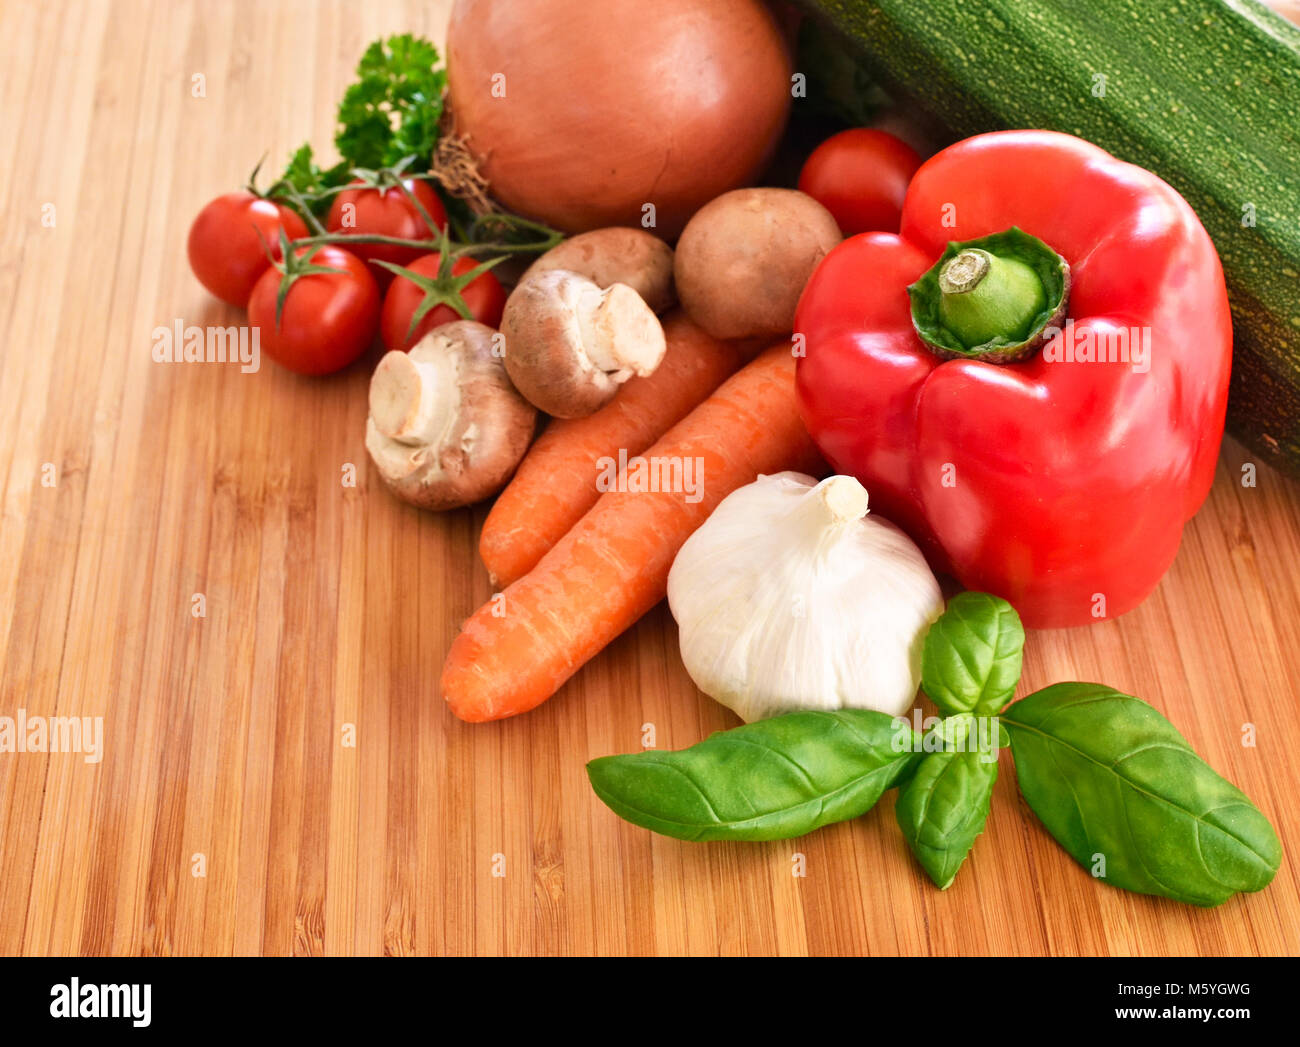 Fresche verdure crude su un tagliere. disposizione di peperone rosso, zucchine, broccoli, insalata, cipolla, carote e aglio, decorate in bambù. Foto Stock